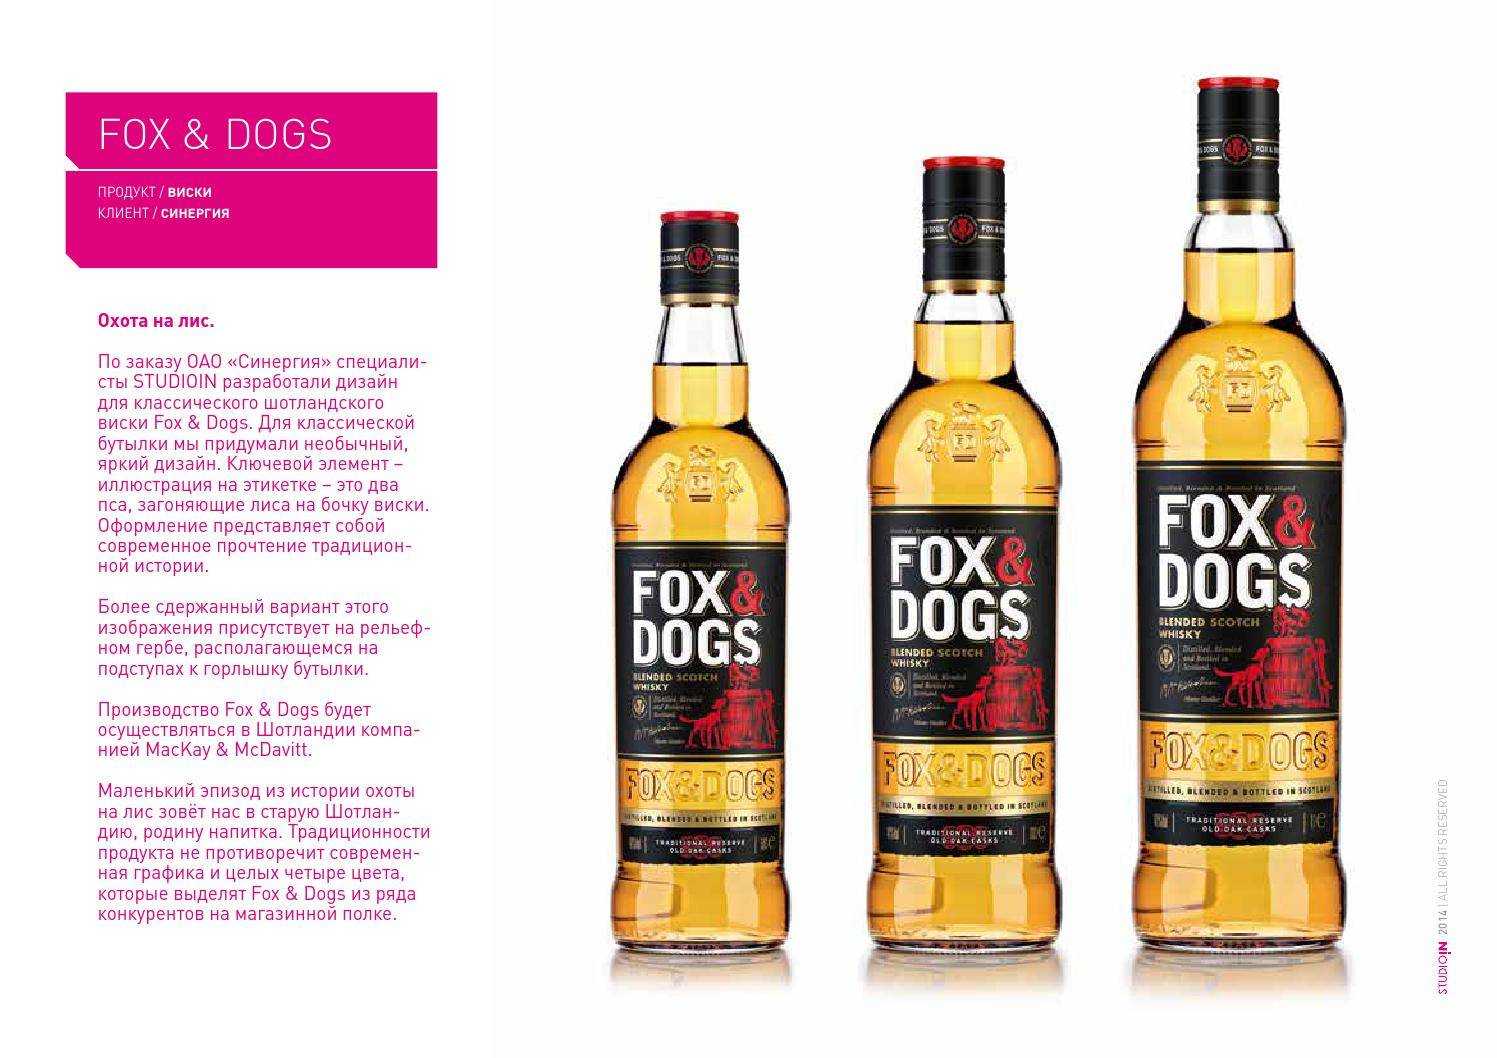 Виски фокс энд догс: особенности напитка fox and dogs